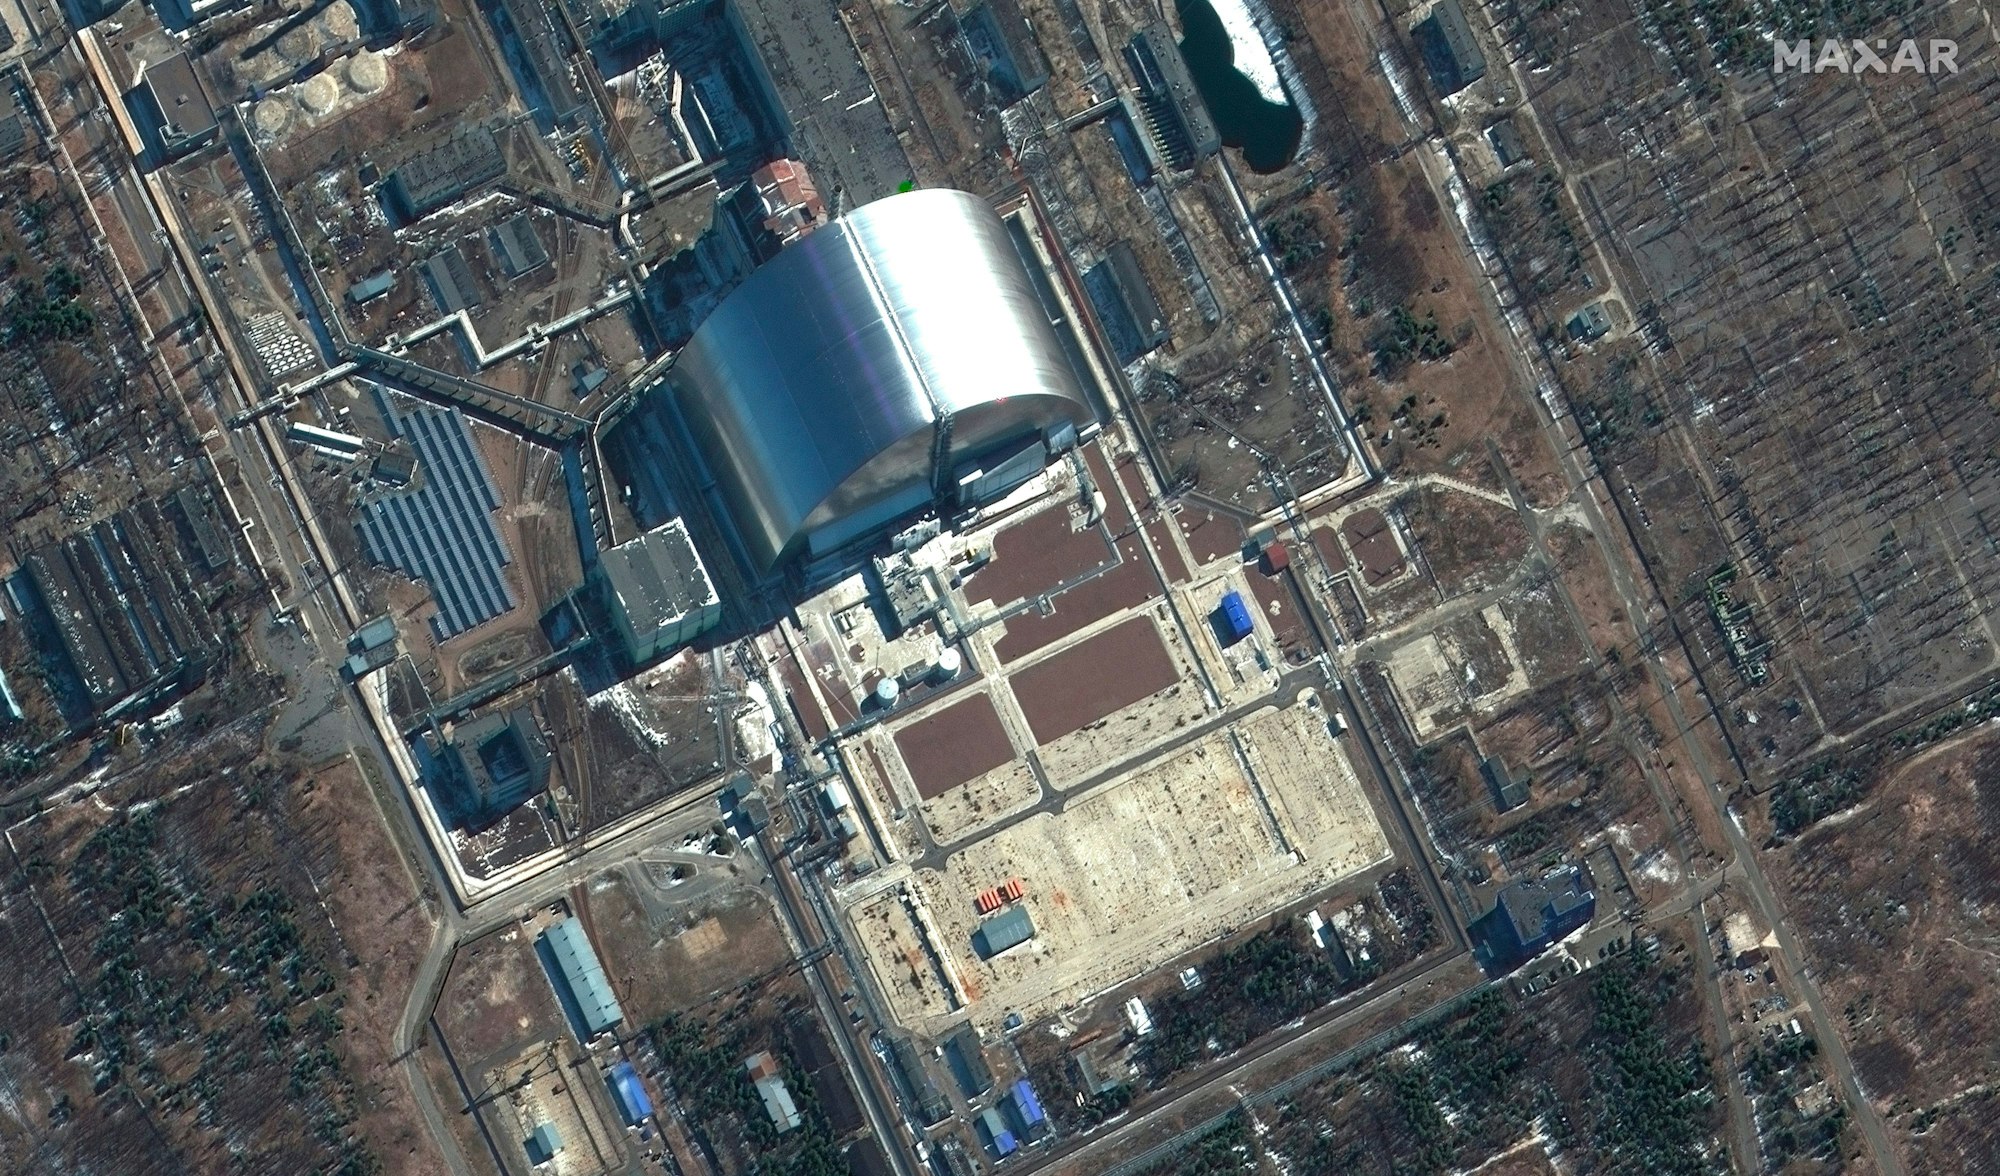 Dieses von Maxar Technologies zur Verfügung gestellte Satellitenbild zeigt eine Nahaufnahme der Nuklearanlagen von Tschornobyl in der Ukraine während der russischen Invasion am Donnerstag, dem 10. März 2022.